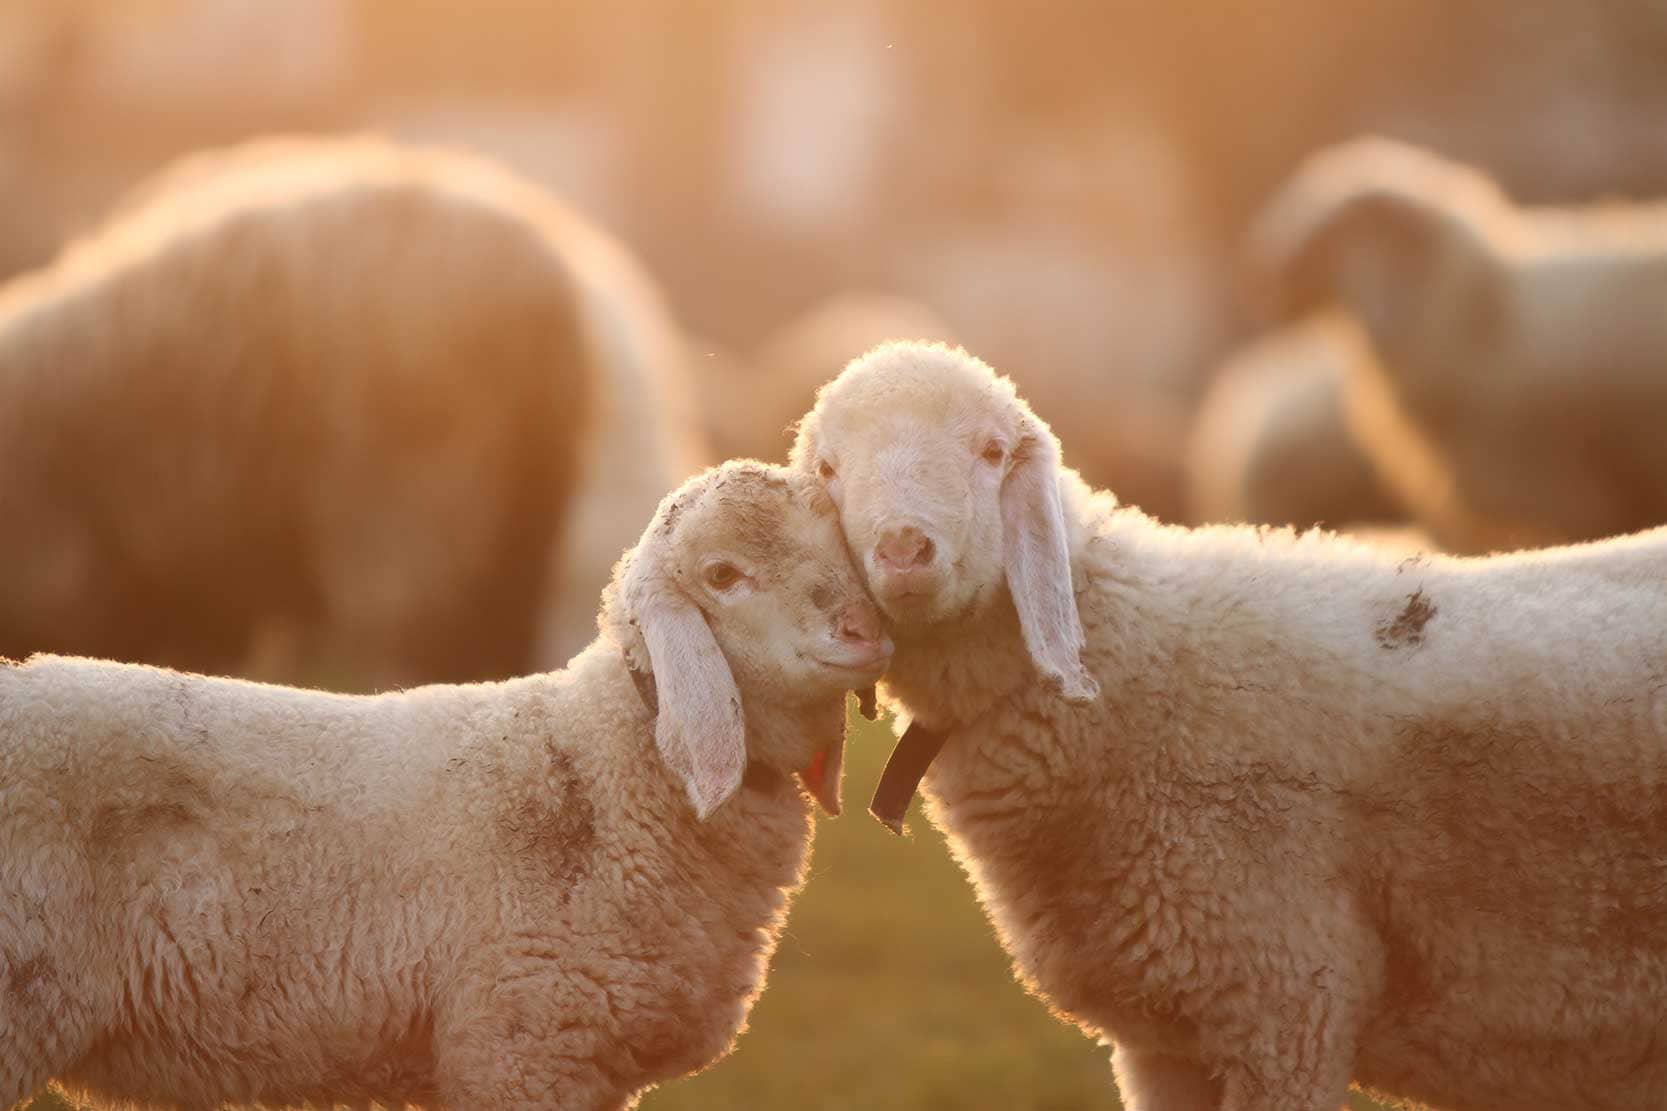 Cuddling Lambs taken during golden hour